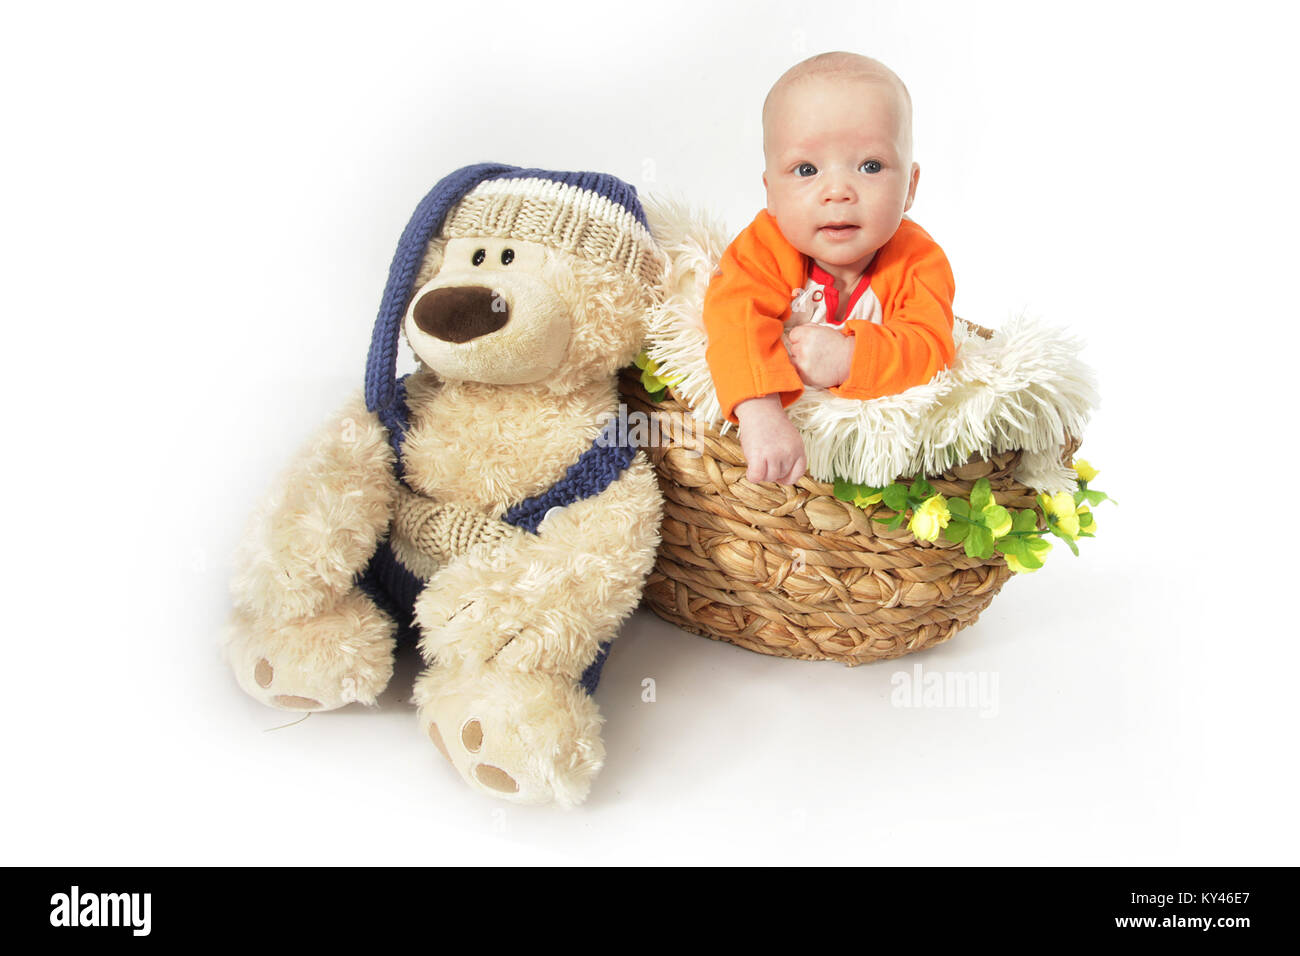 Bébé Garçon 2 mois, jouant dans panier en osier avec teddy Banque D'Images